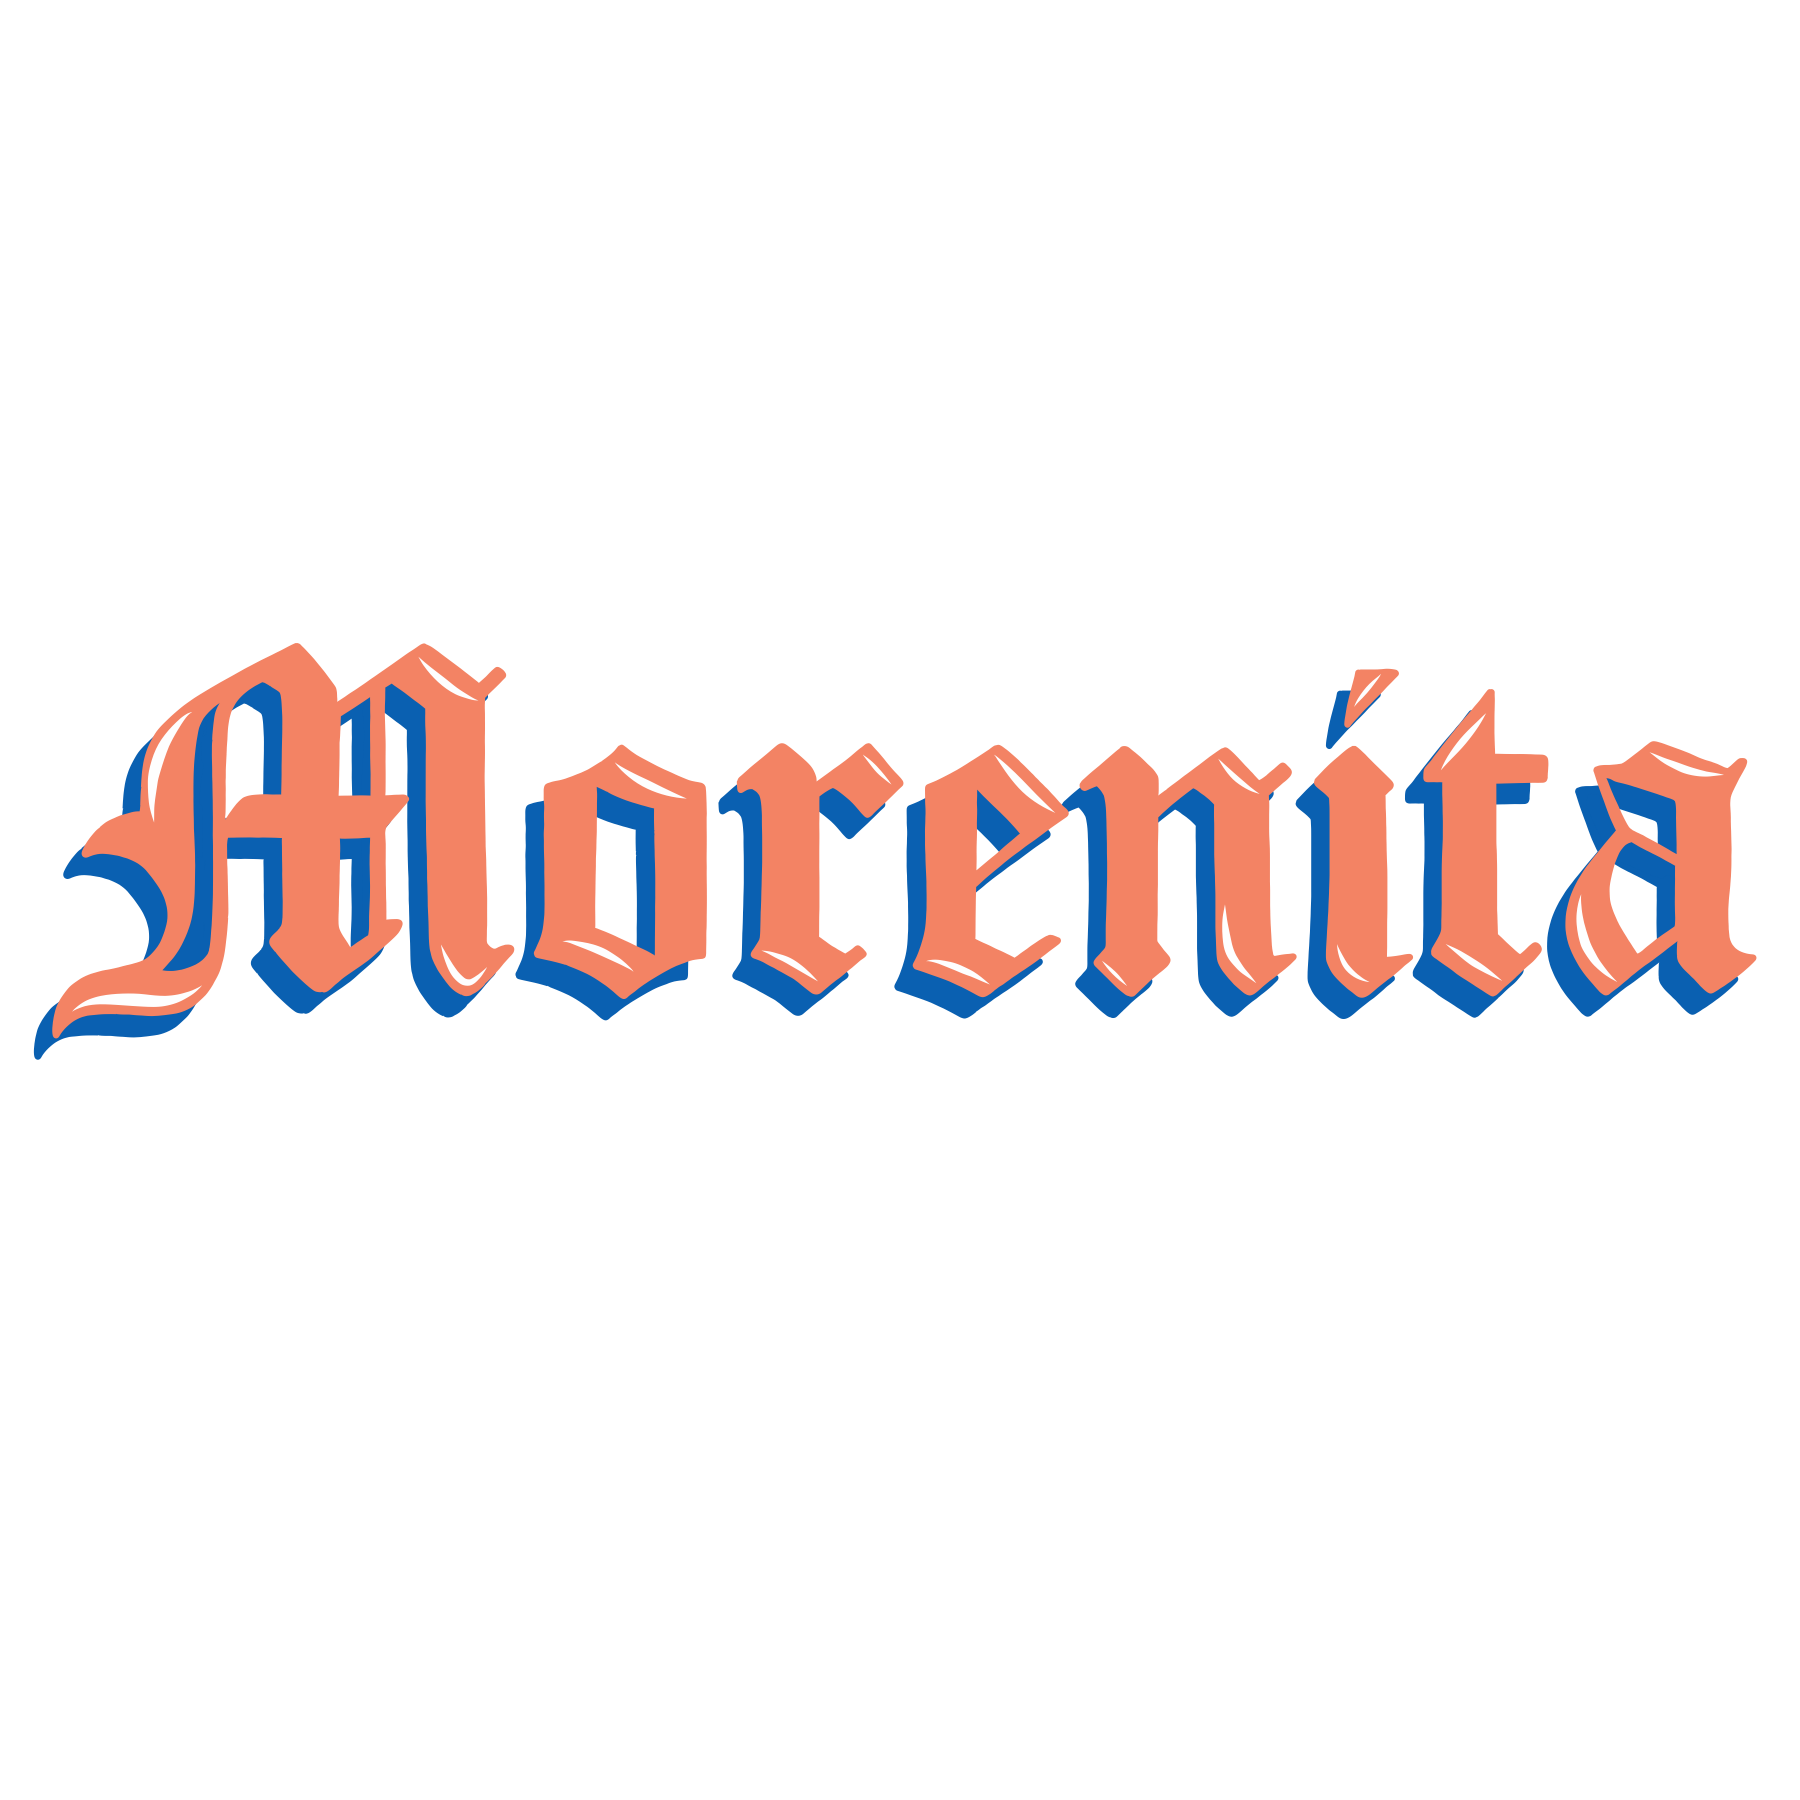 Morenita Old English .png